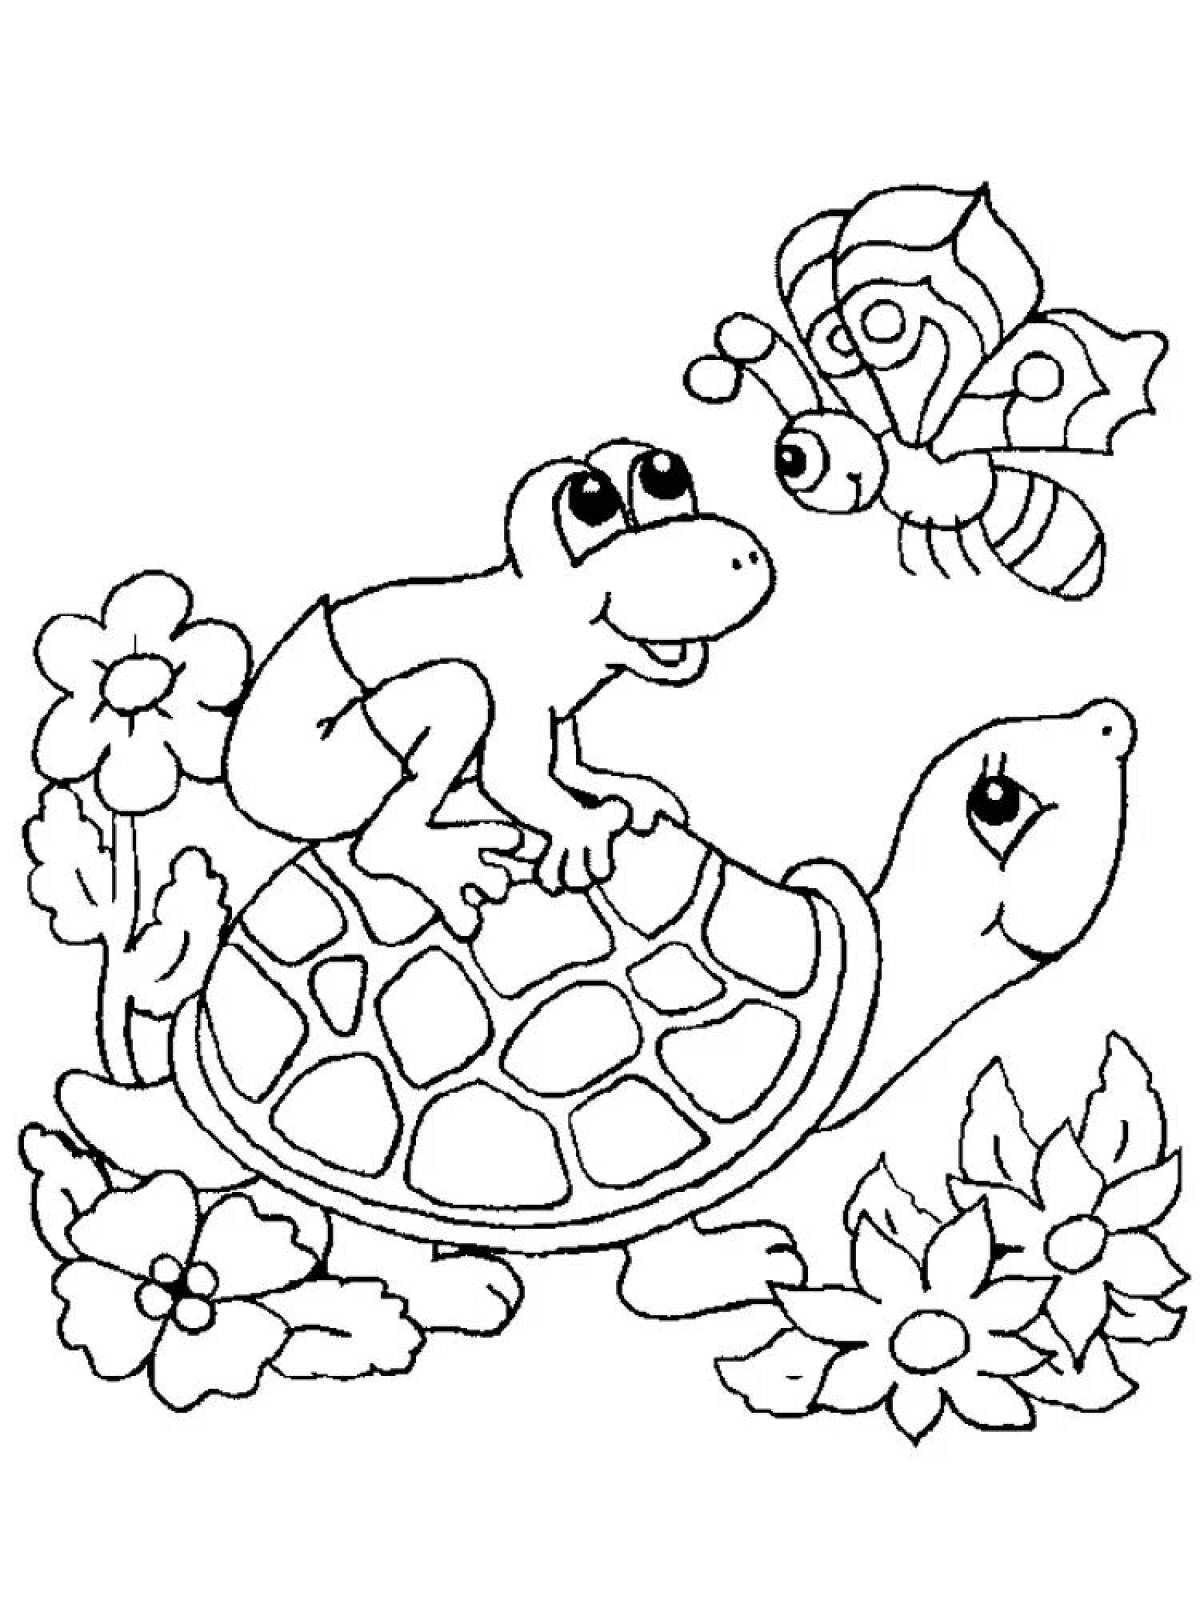 Волшебная черепаха-раскраска для детей 3-4 лет